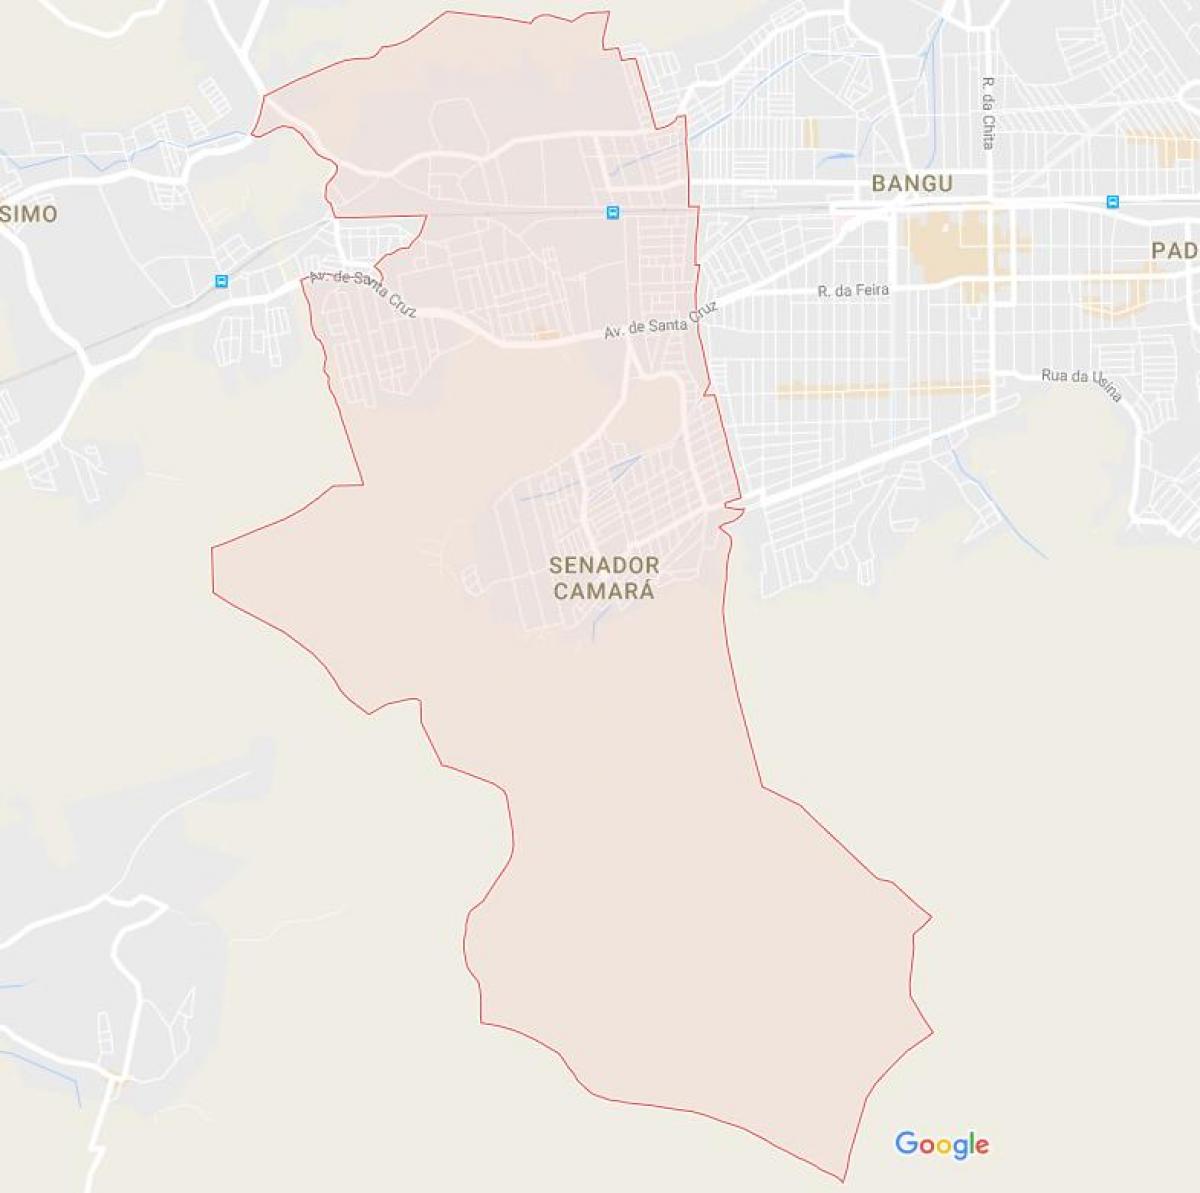 خريطة سنادور كاماره